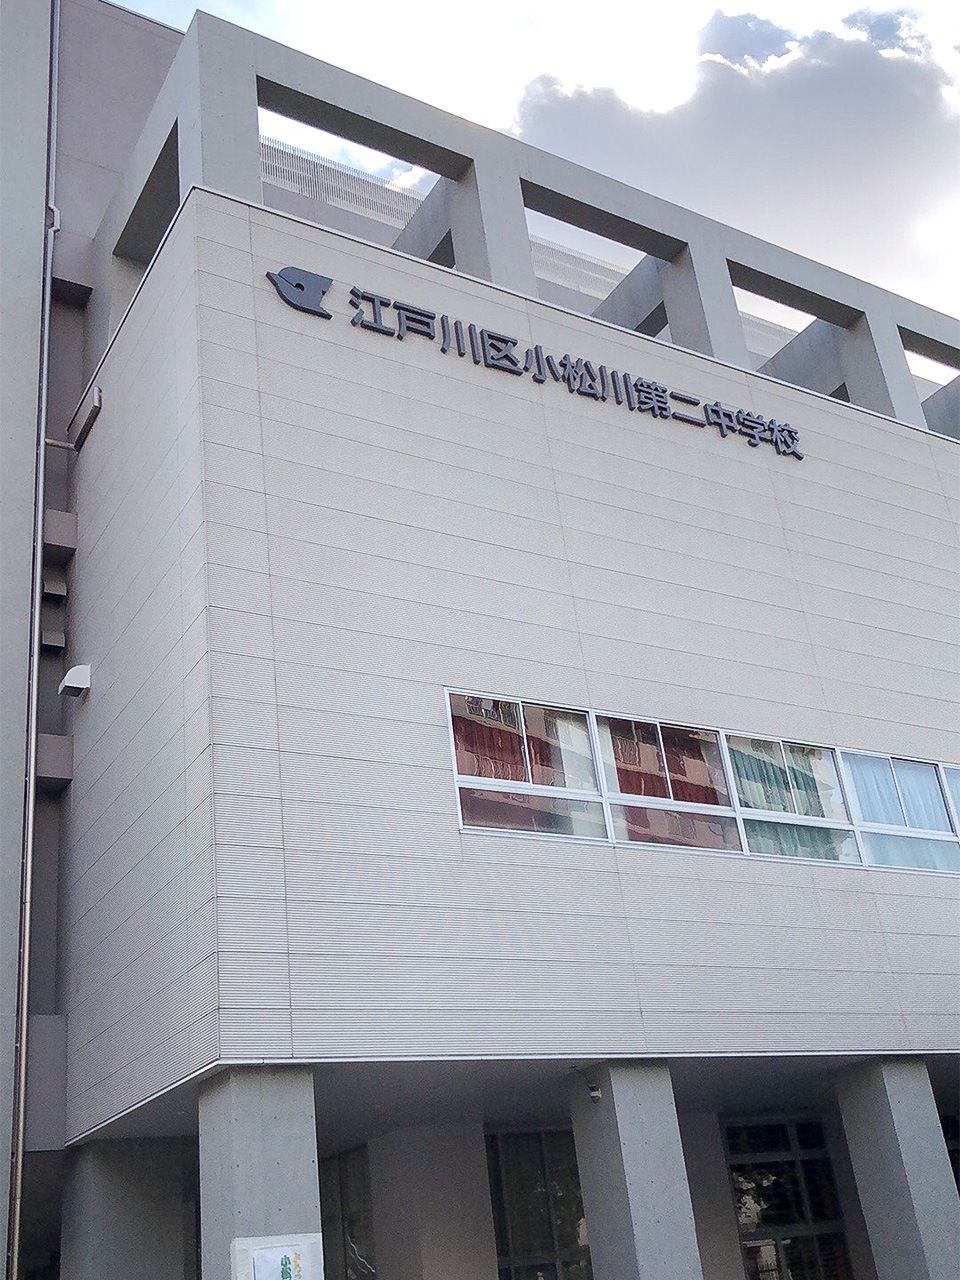 2018年4月から使われている江戸川区立小松川第二中学校の新校舎。3学年で全16学級520人が学ぶ。（2019年5月時点の生徒数（ニッポンドットコム 高橋郁文撮影）